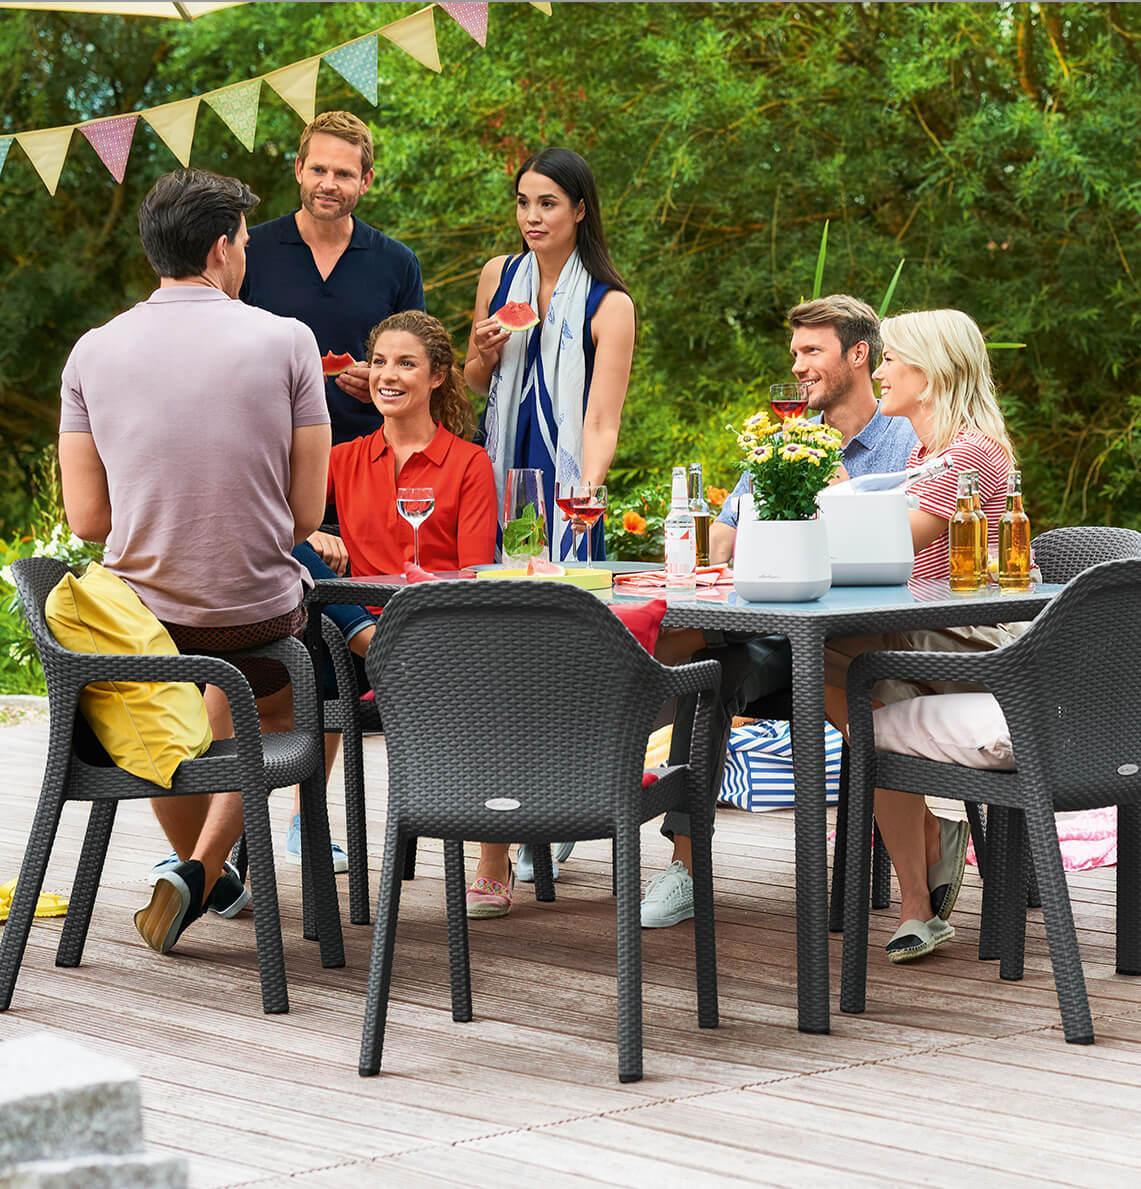 Vrienden vieren een feestje in de tuin en zitten gezellig aan een tafel.